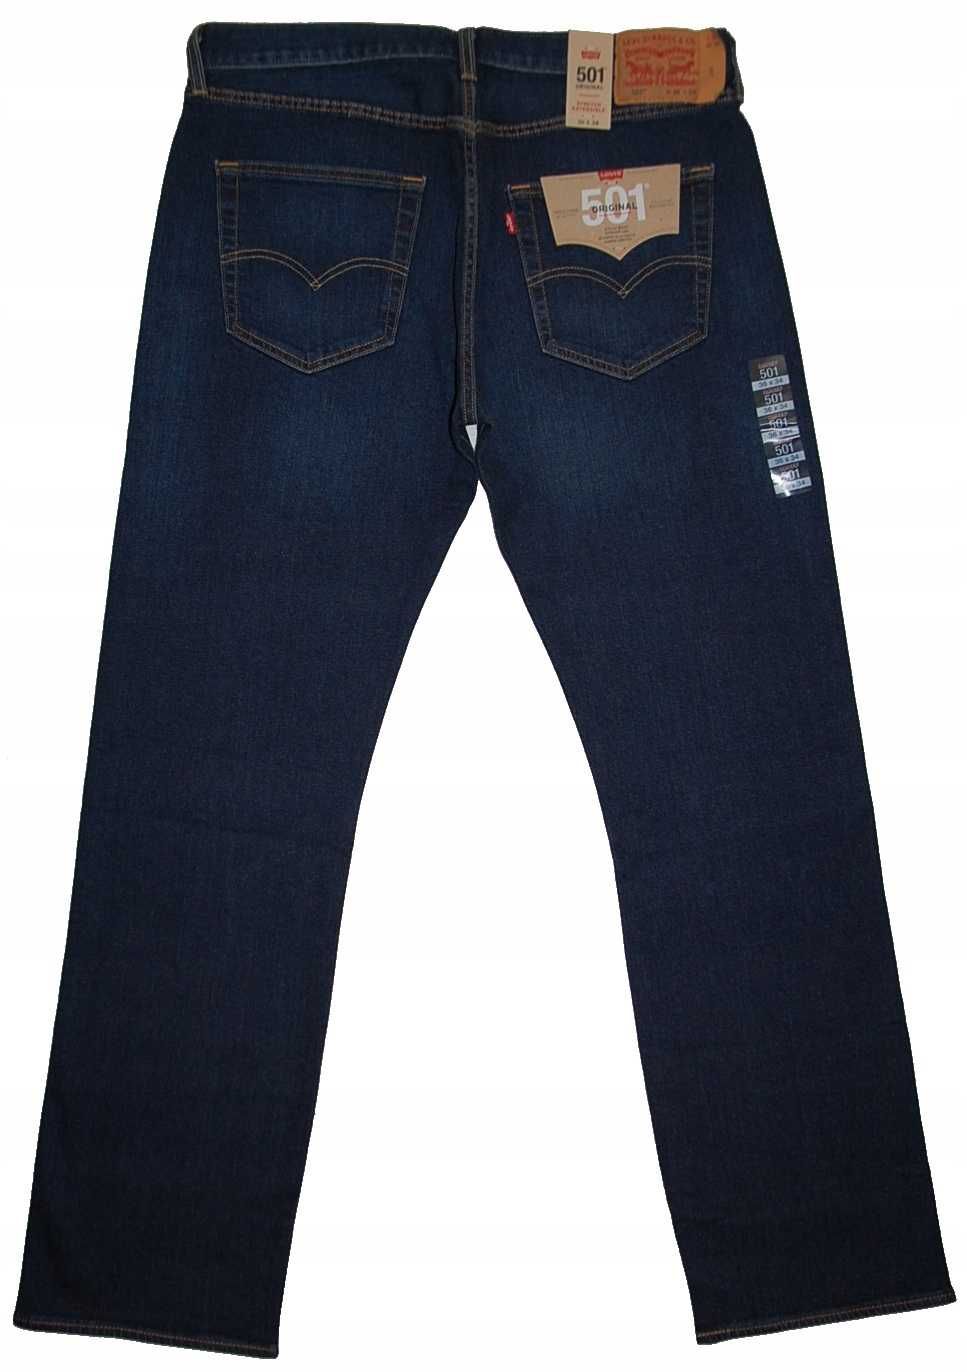 Levi’s 501 oryginalne nowe jeansy 27x32 z metkami 50% sale